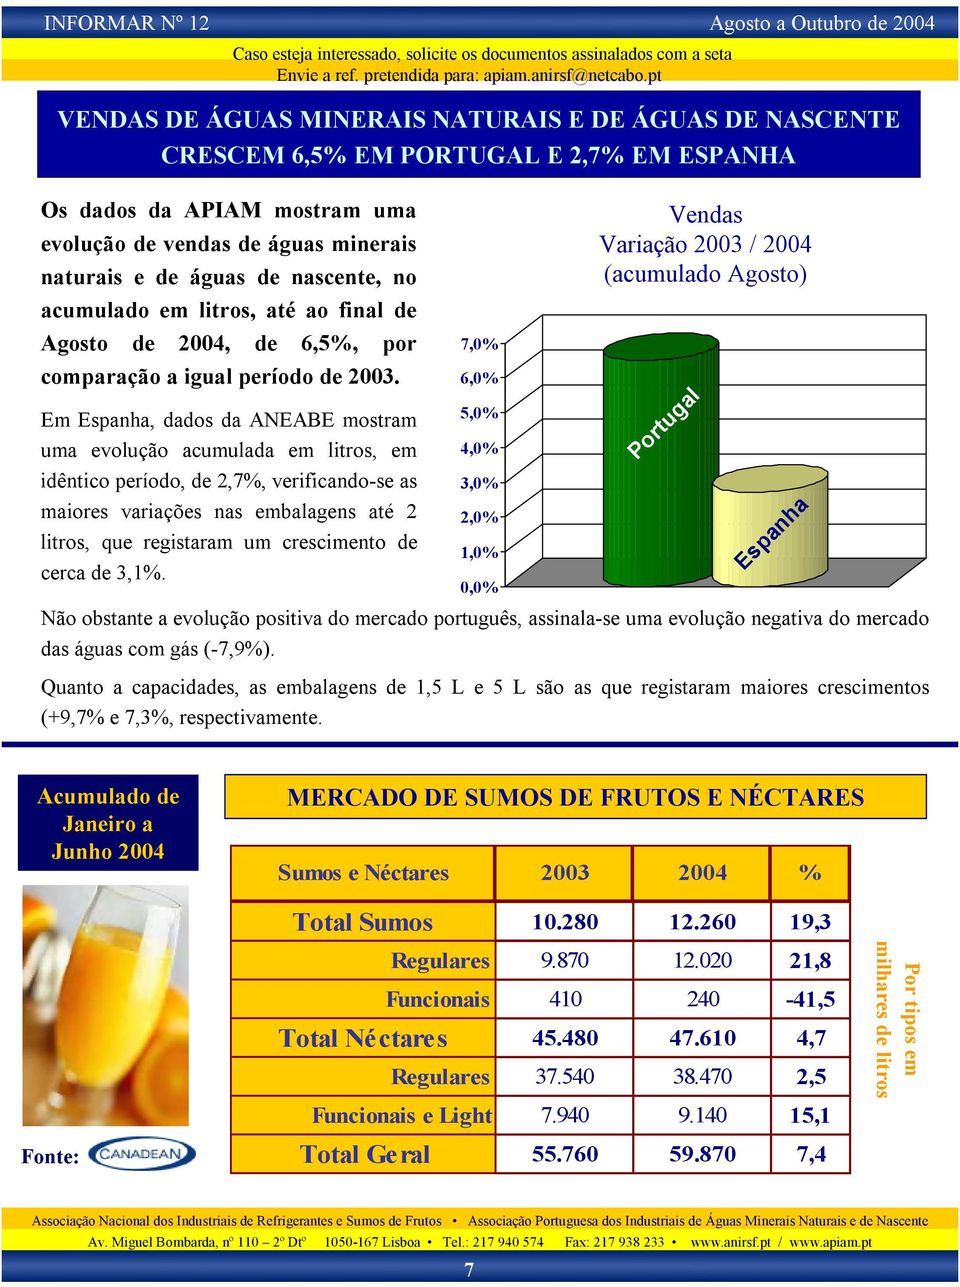 Em Espanha, dados da ANEABE mostram uma evolução acumulada em litros, em idêntico período, de 2,7%, verificando-se as maiores variações nas embalagens até 2 litros, que registaram um crescimento de